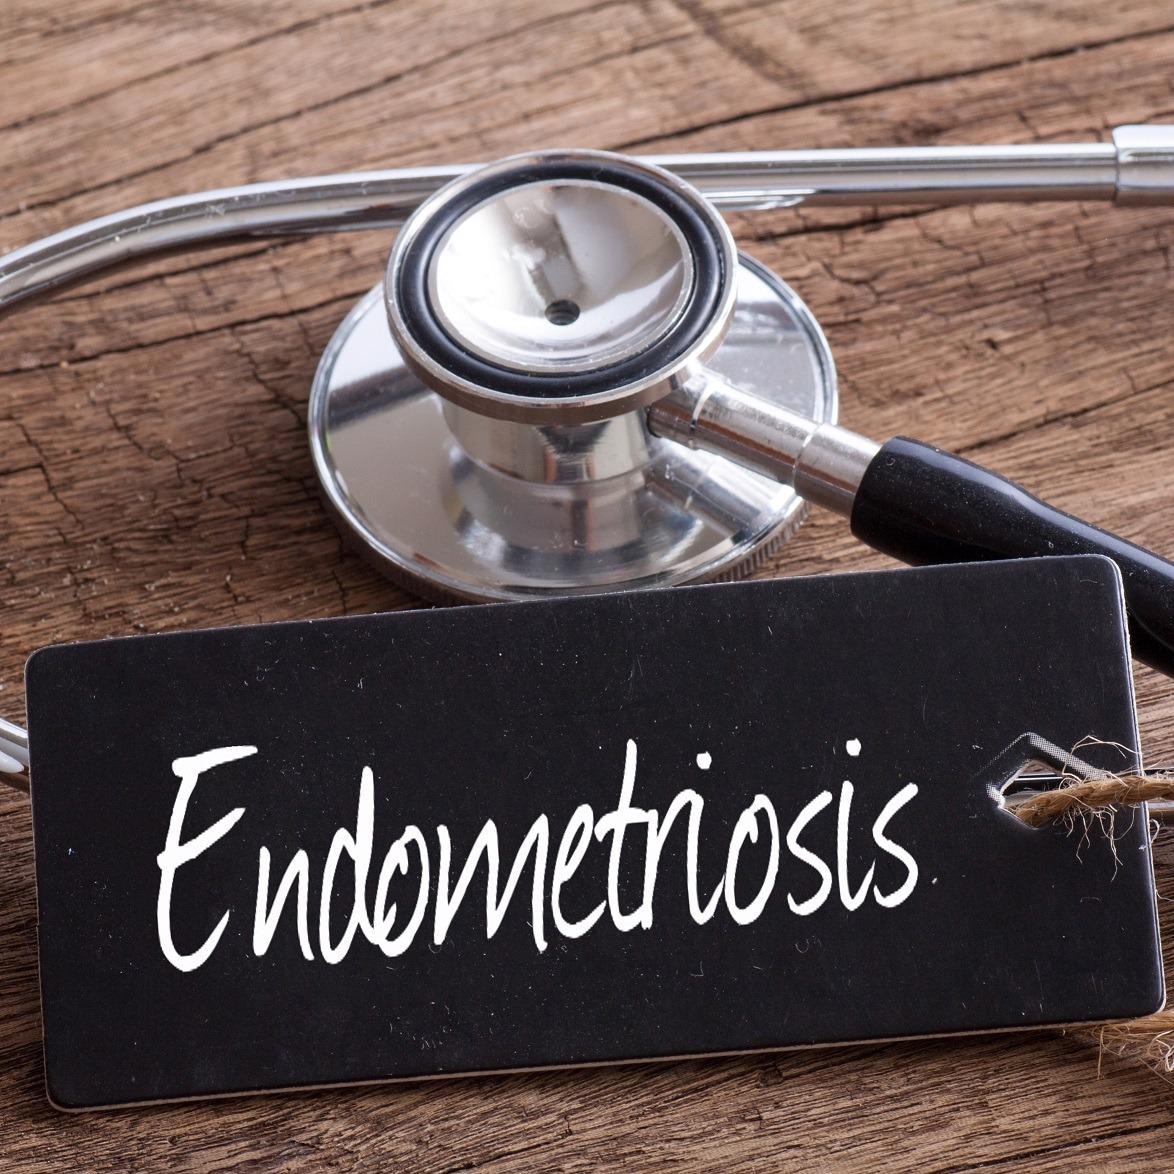 Los ecografistas tardan un 64% más en detectar la endometriosis que en las ecografías pélvicas rutinarias, según un estudio